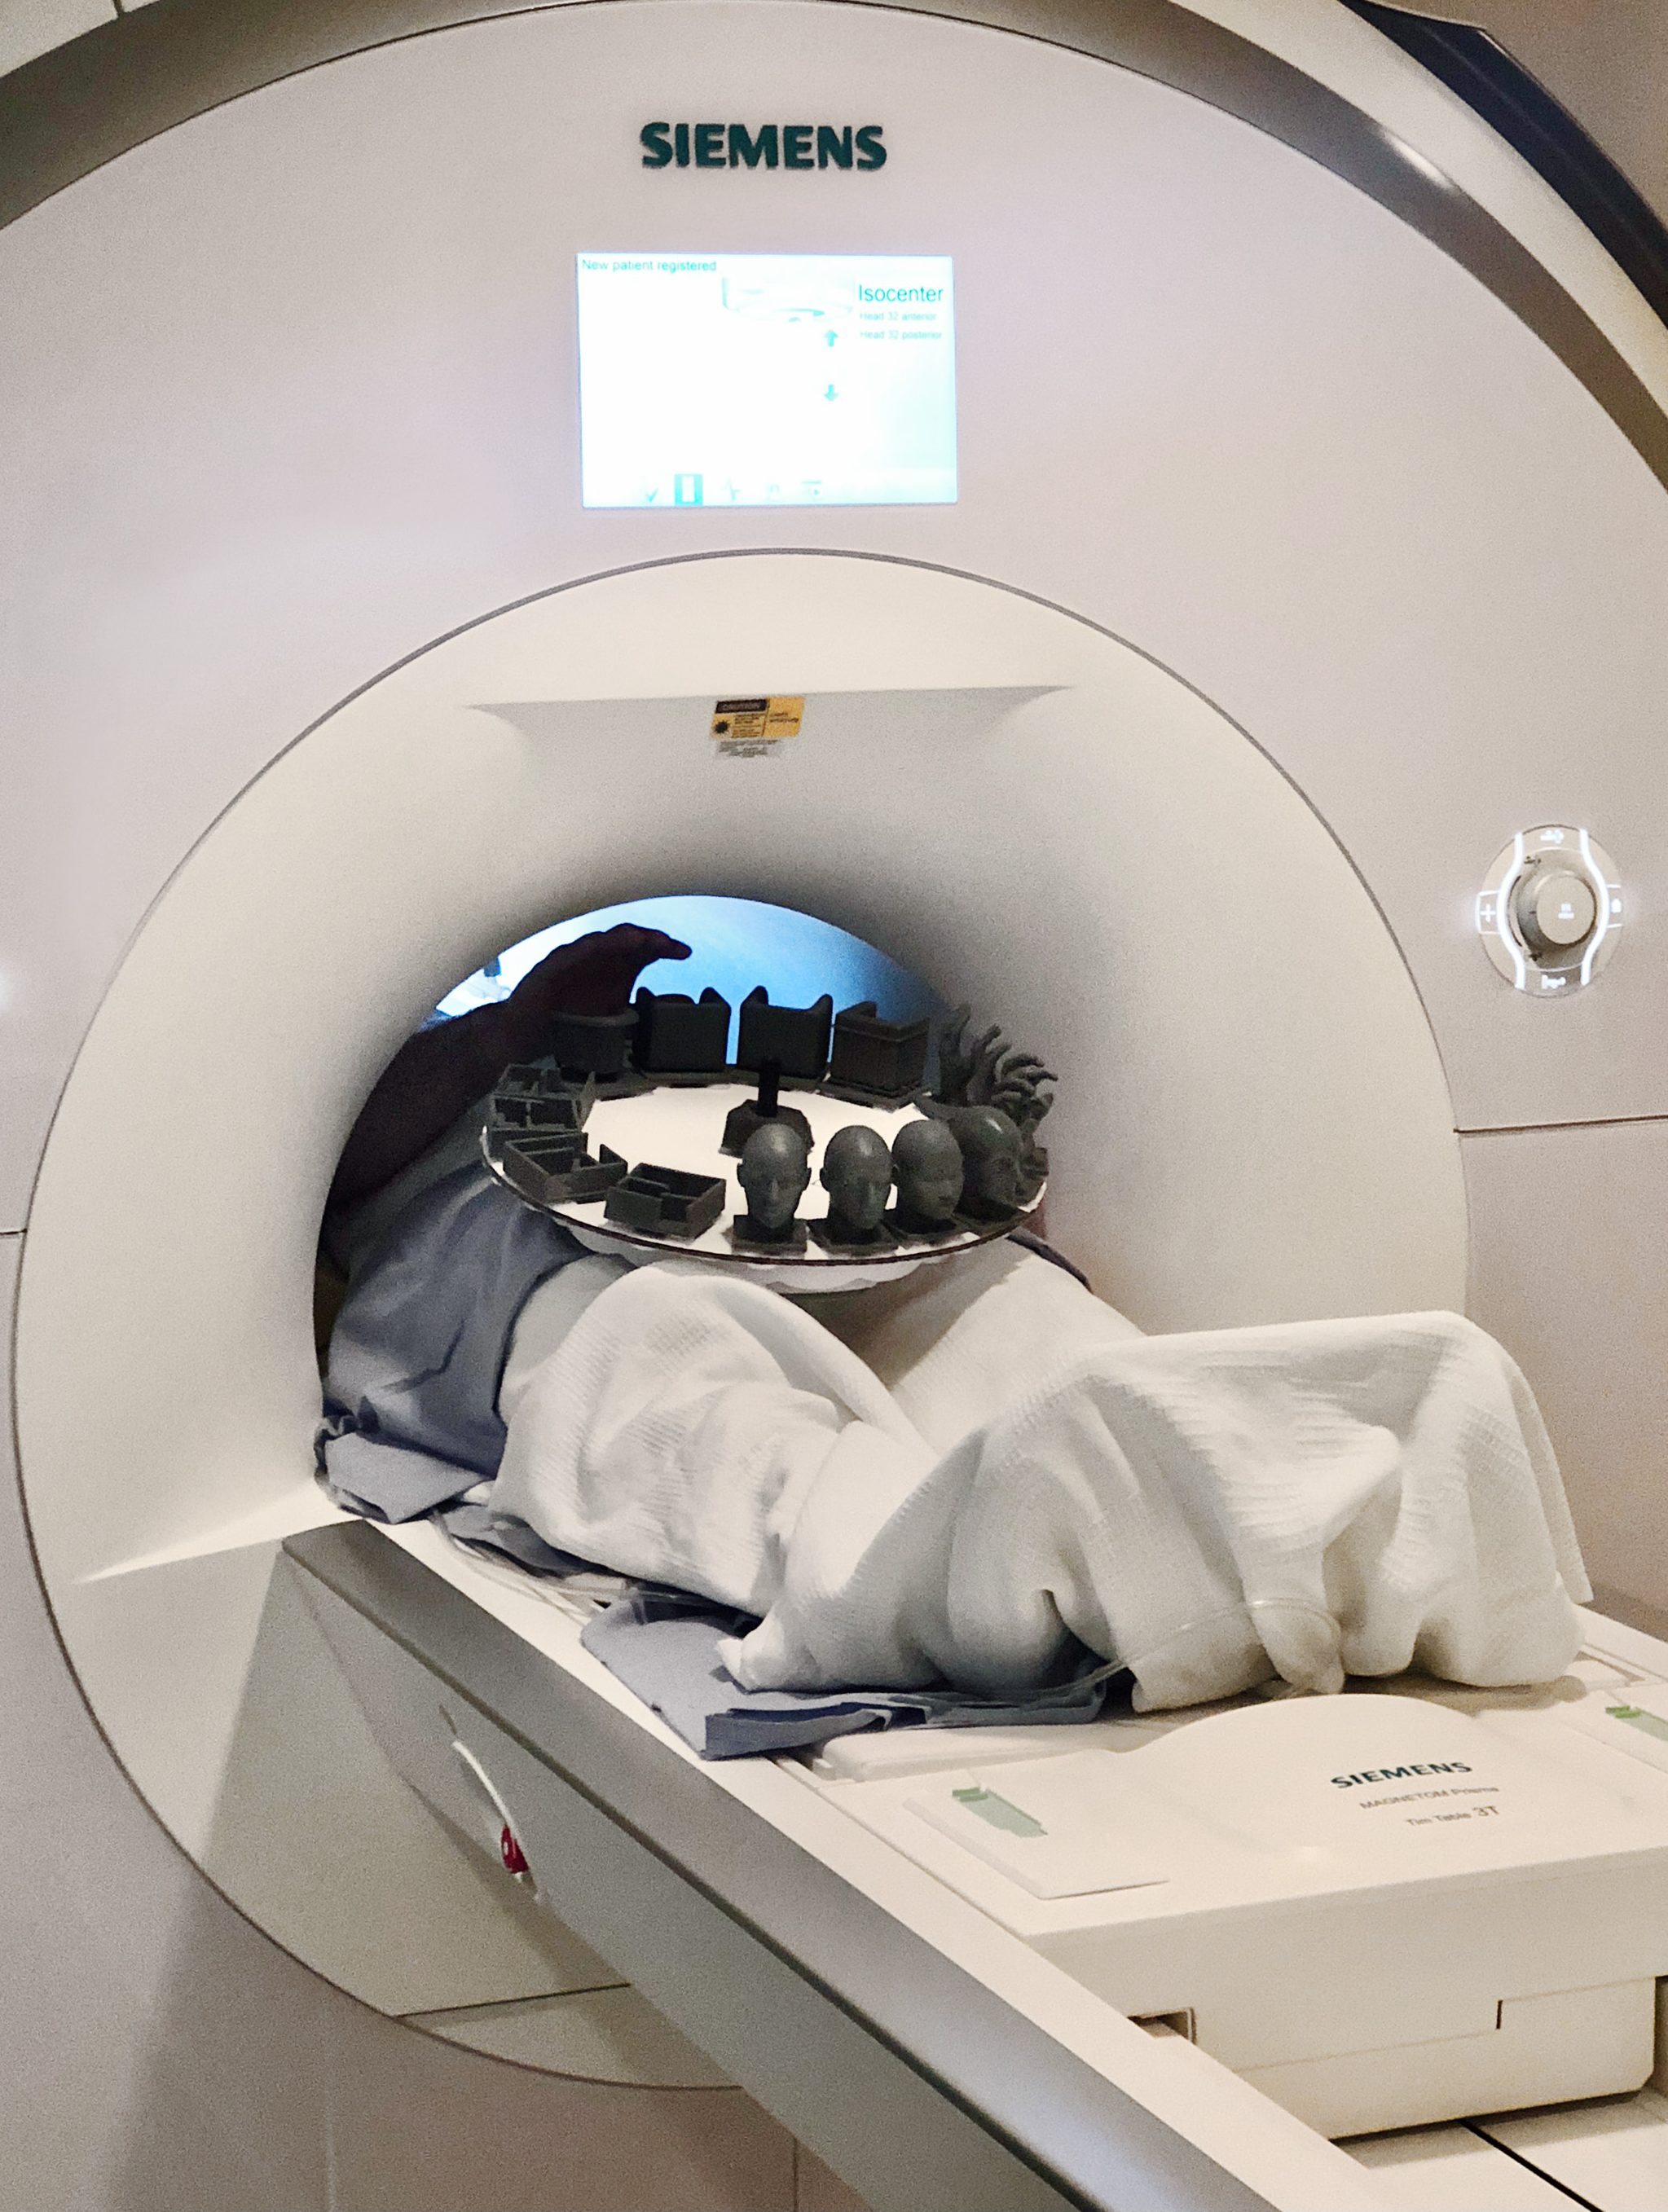 subject inside MRI scanner